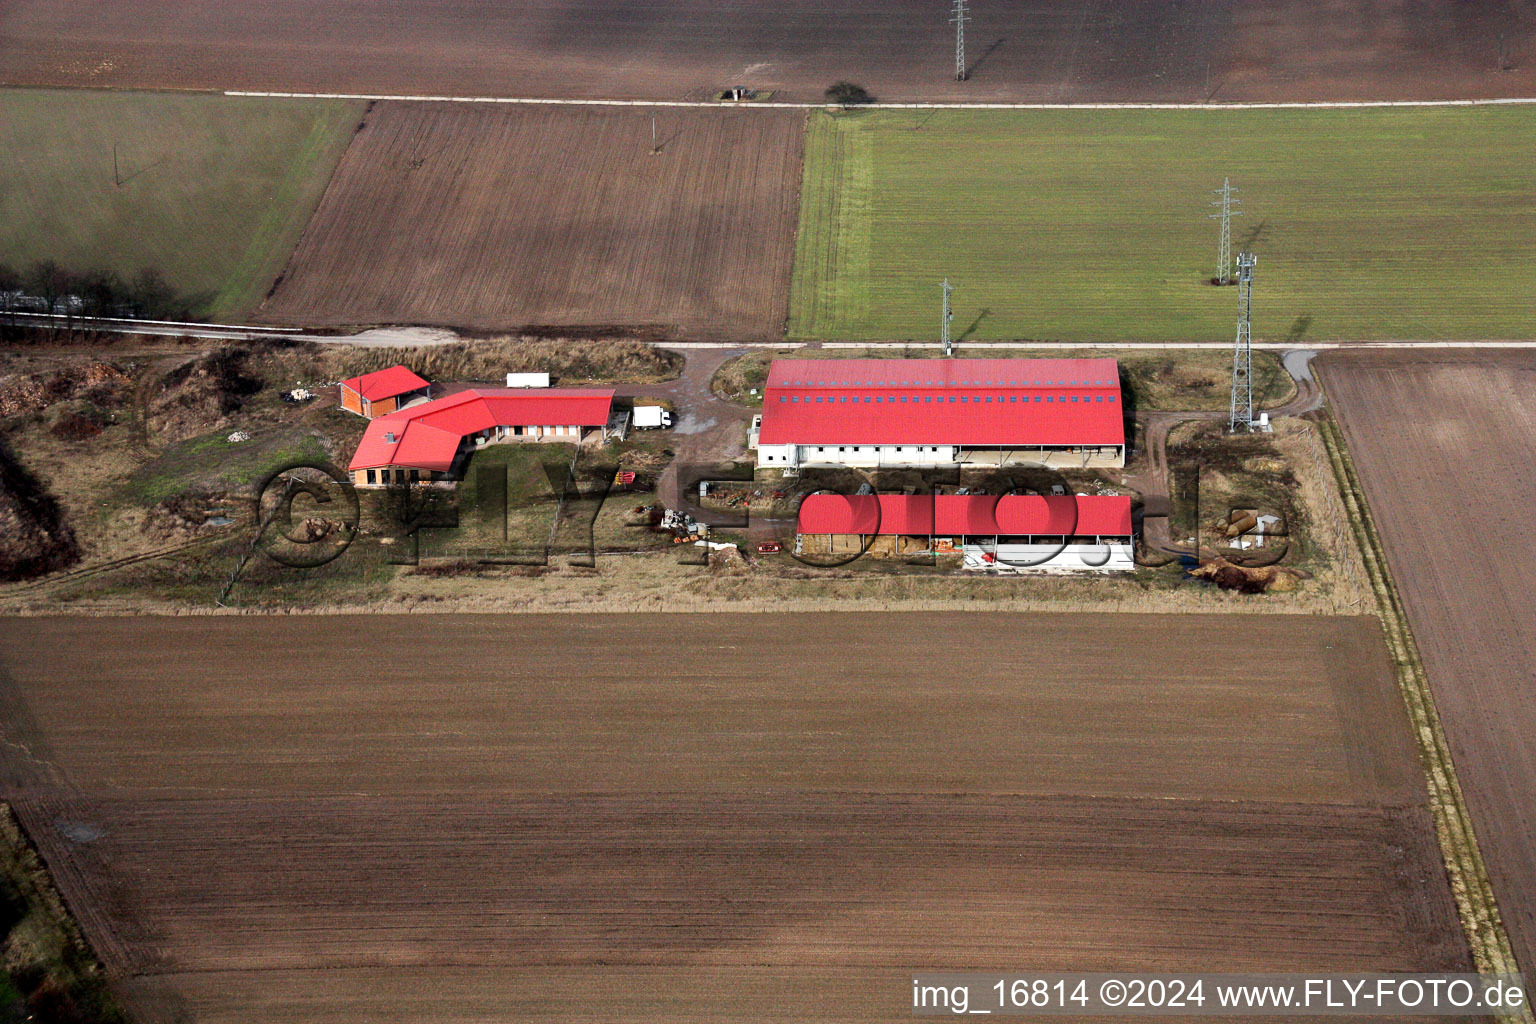 Luftbild von Aussiedlerhof in Erlenbach bei Kandel im Bundesland Rheinland-Pfalz, Deutschland